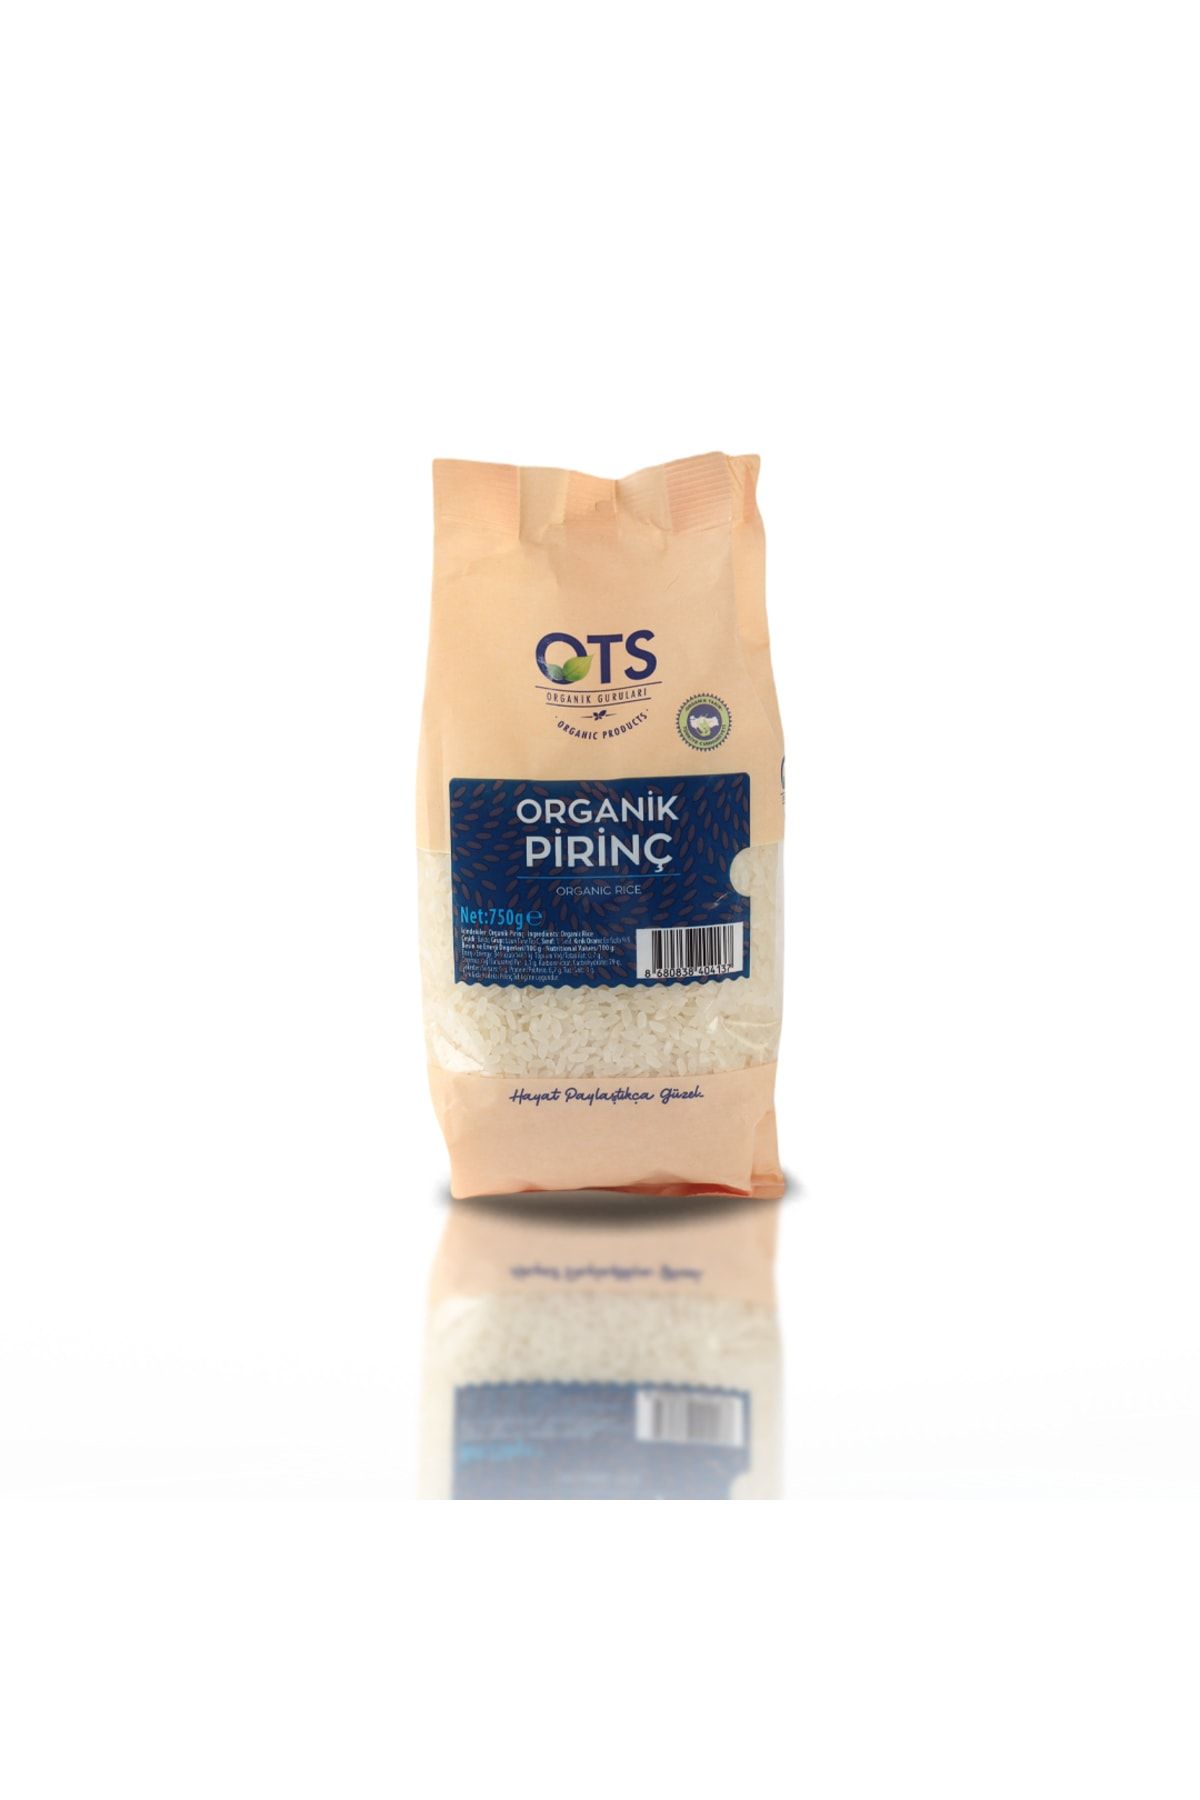 OTS Organik Pirinç 750 G.